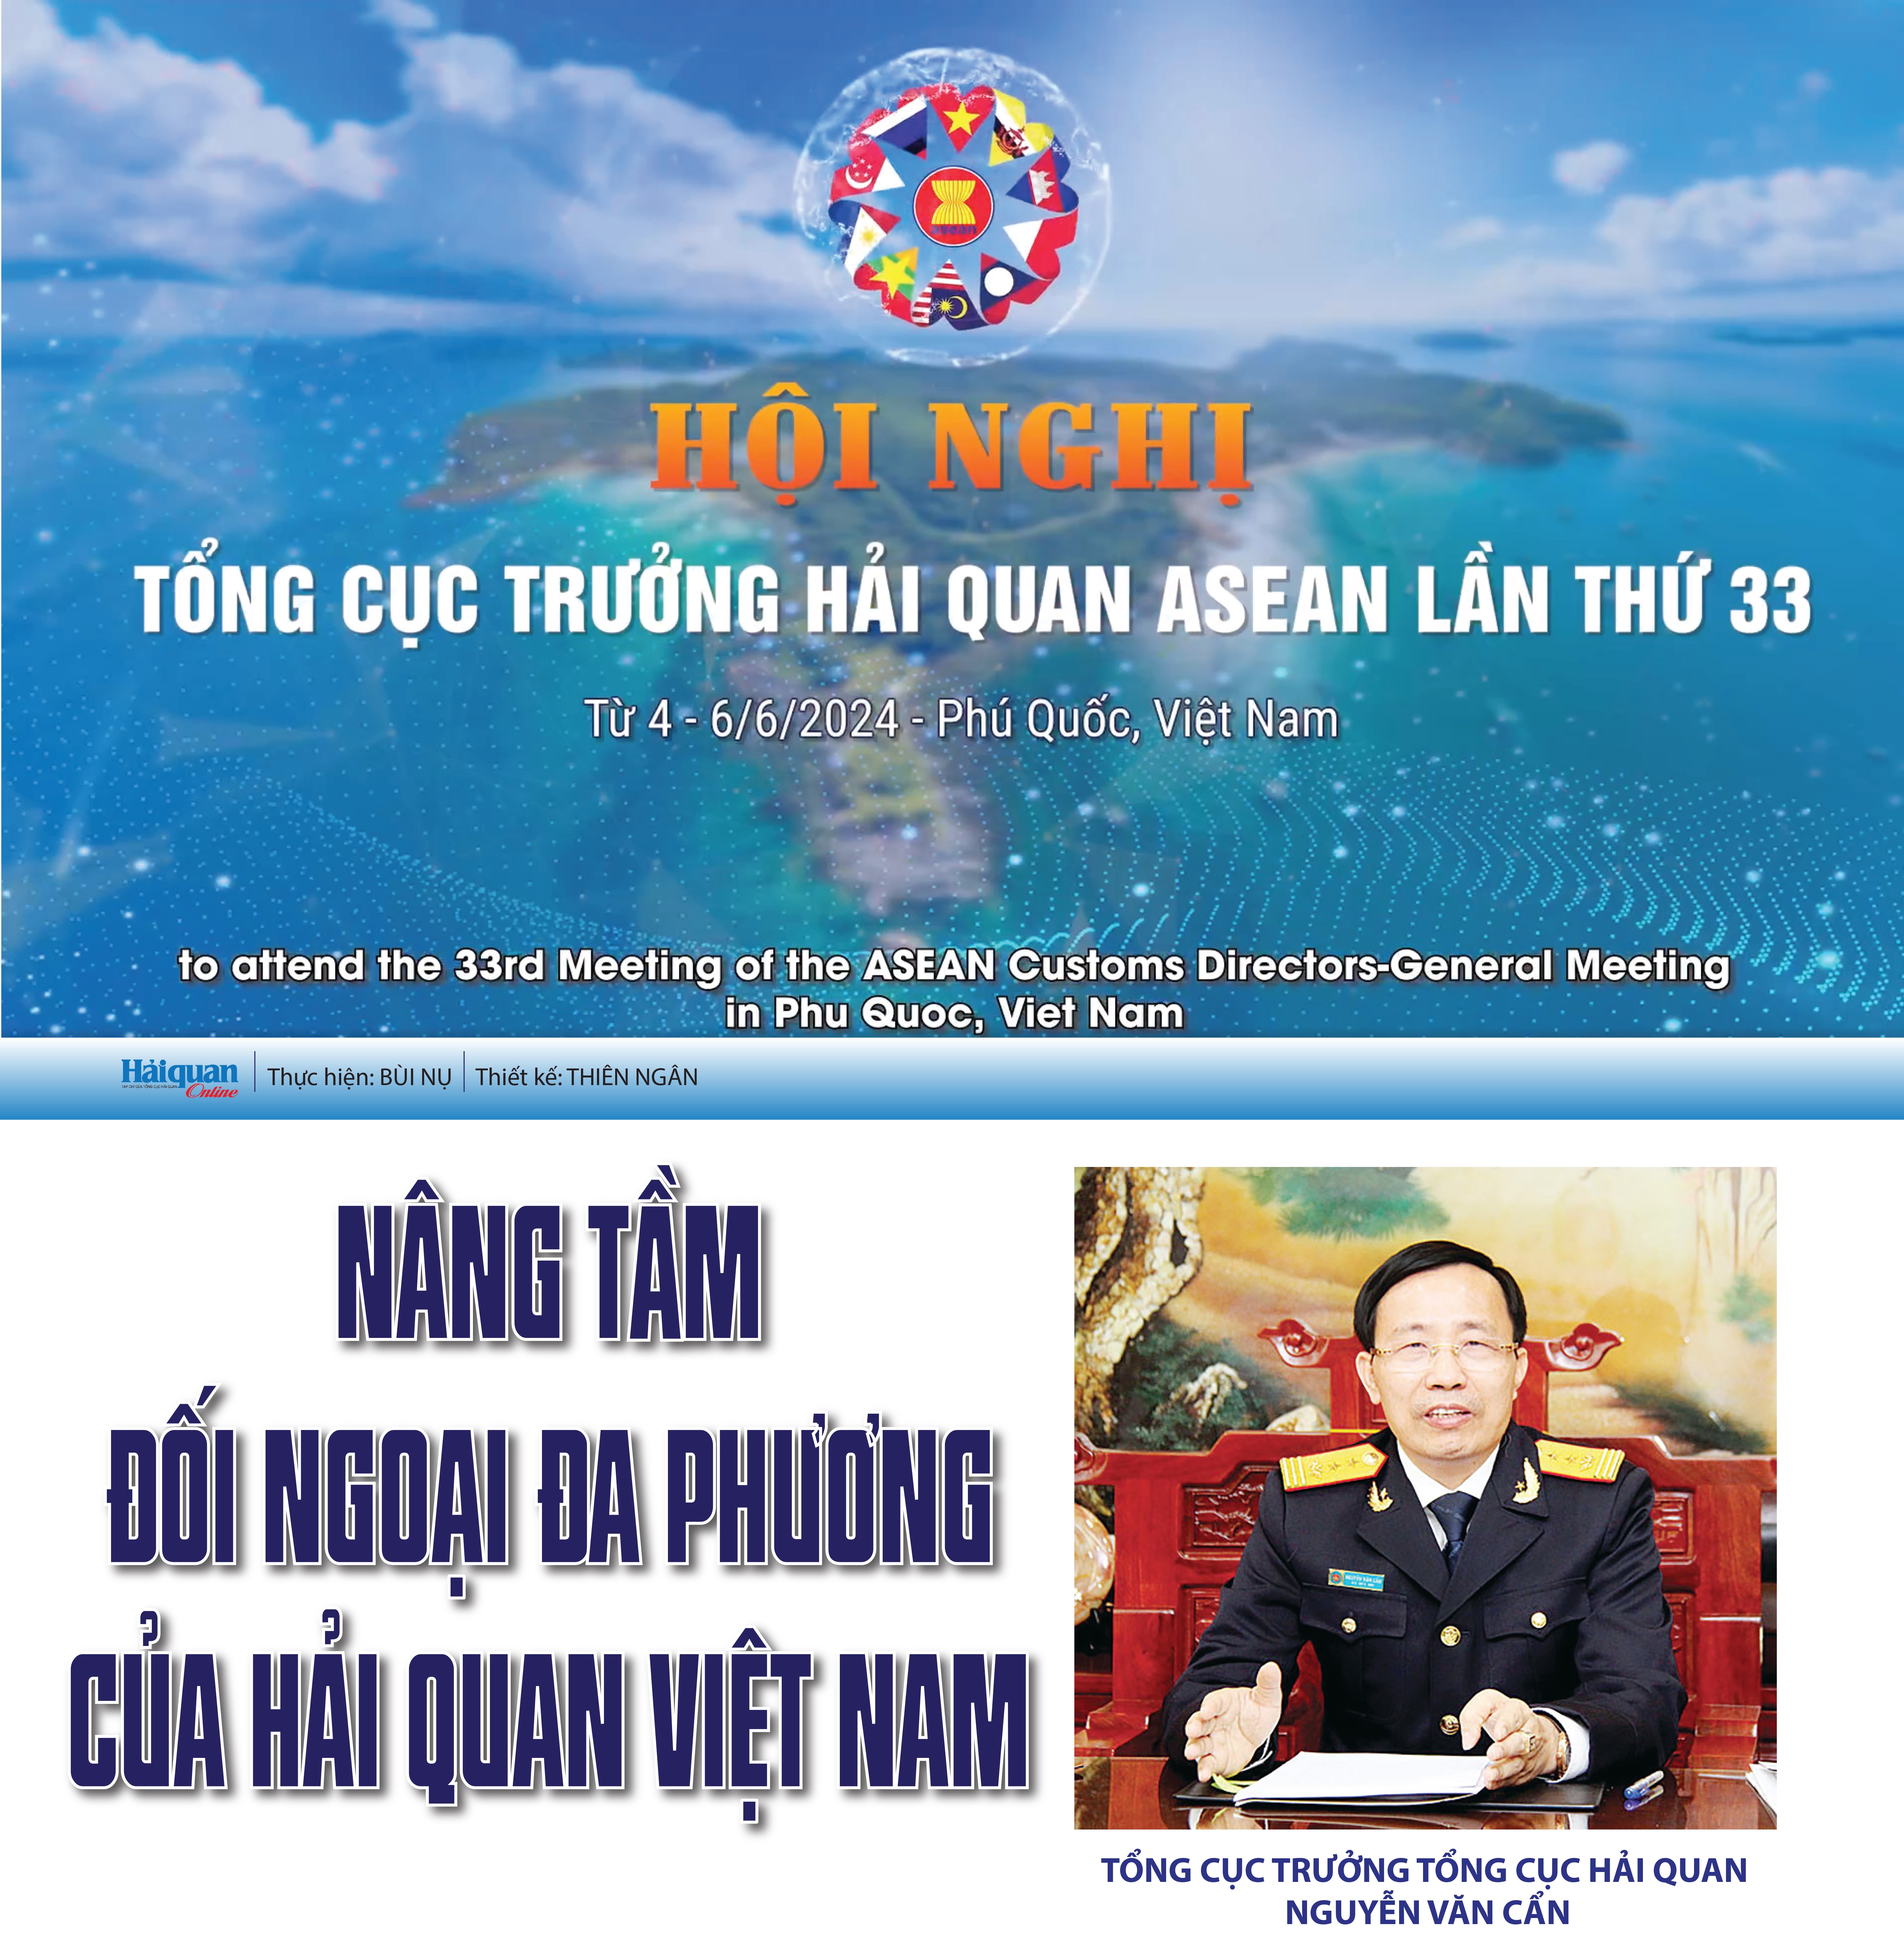 Hội nghị Tổng cục trưởng Hải quan ASEAN lần thứ 33:  Nâng tầm đối ngoại đa phương của Hải quan Việt Nam